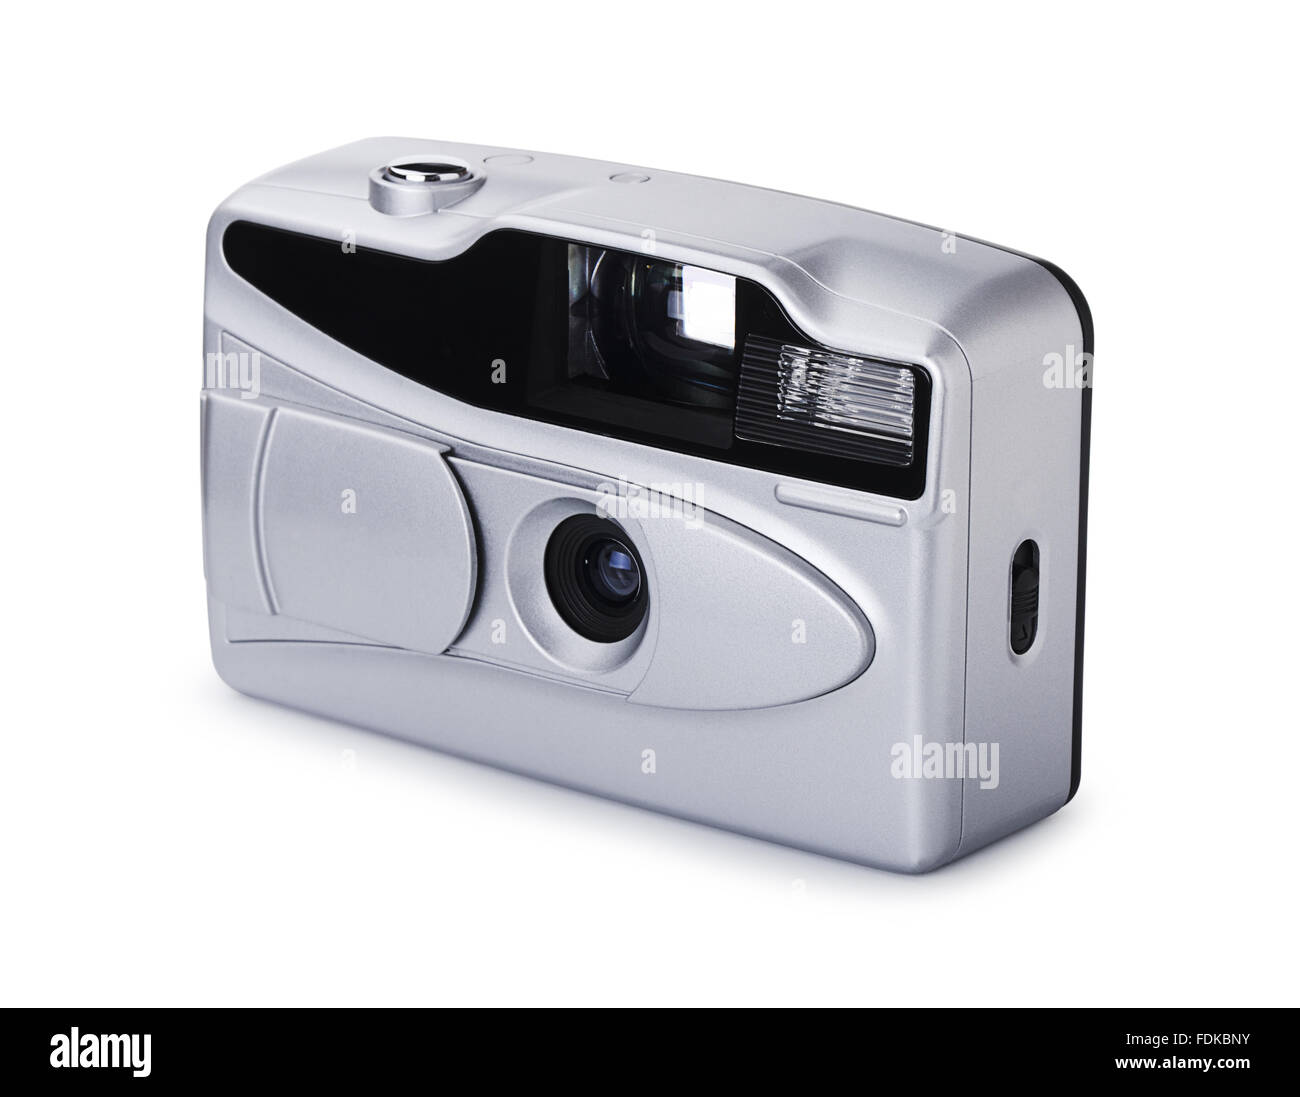 Billige Kunststoff-Kamera auf einem weißen Hintergrund Stockfoto